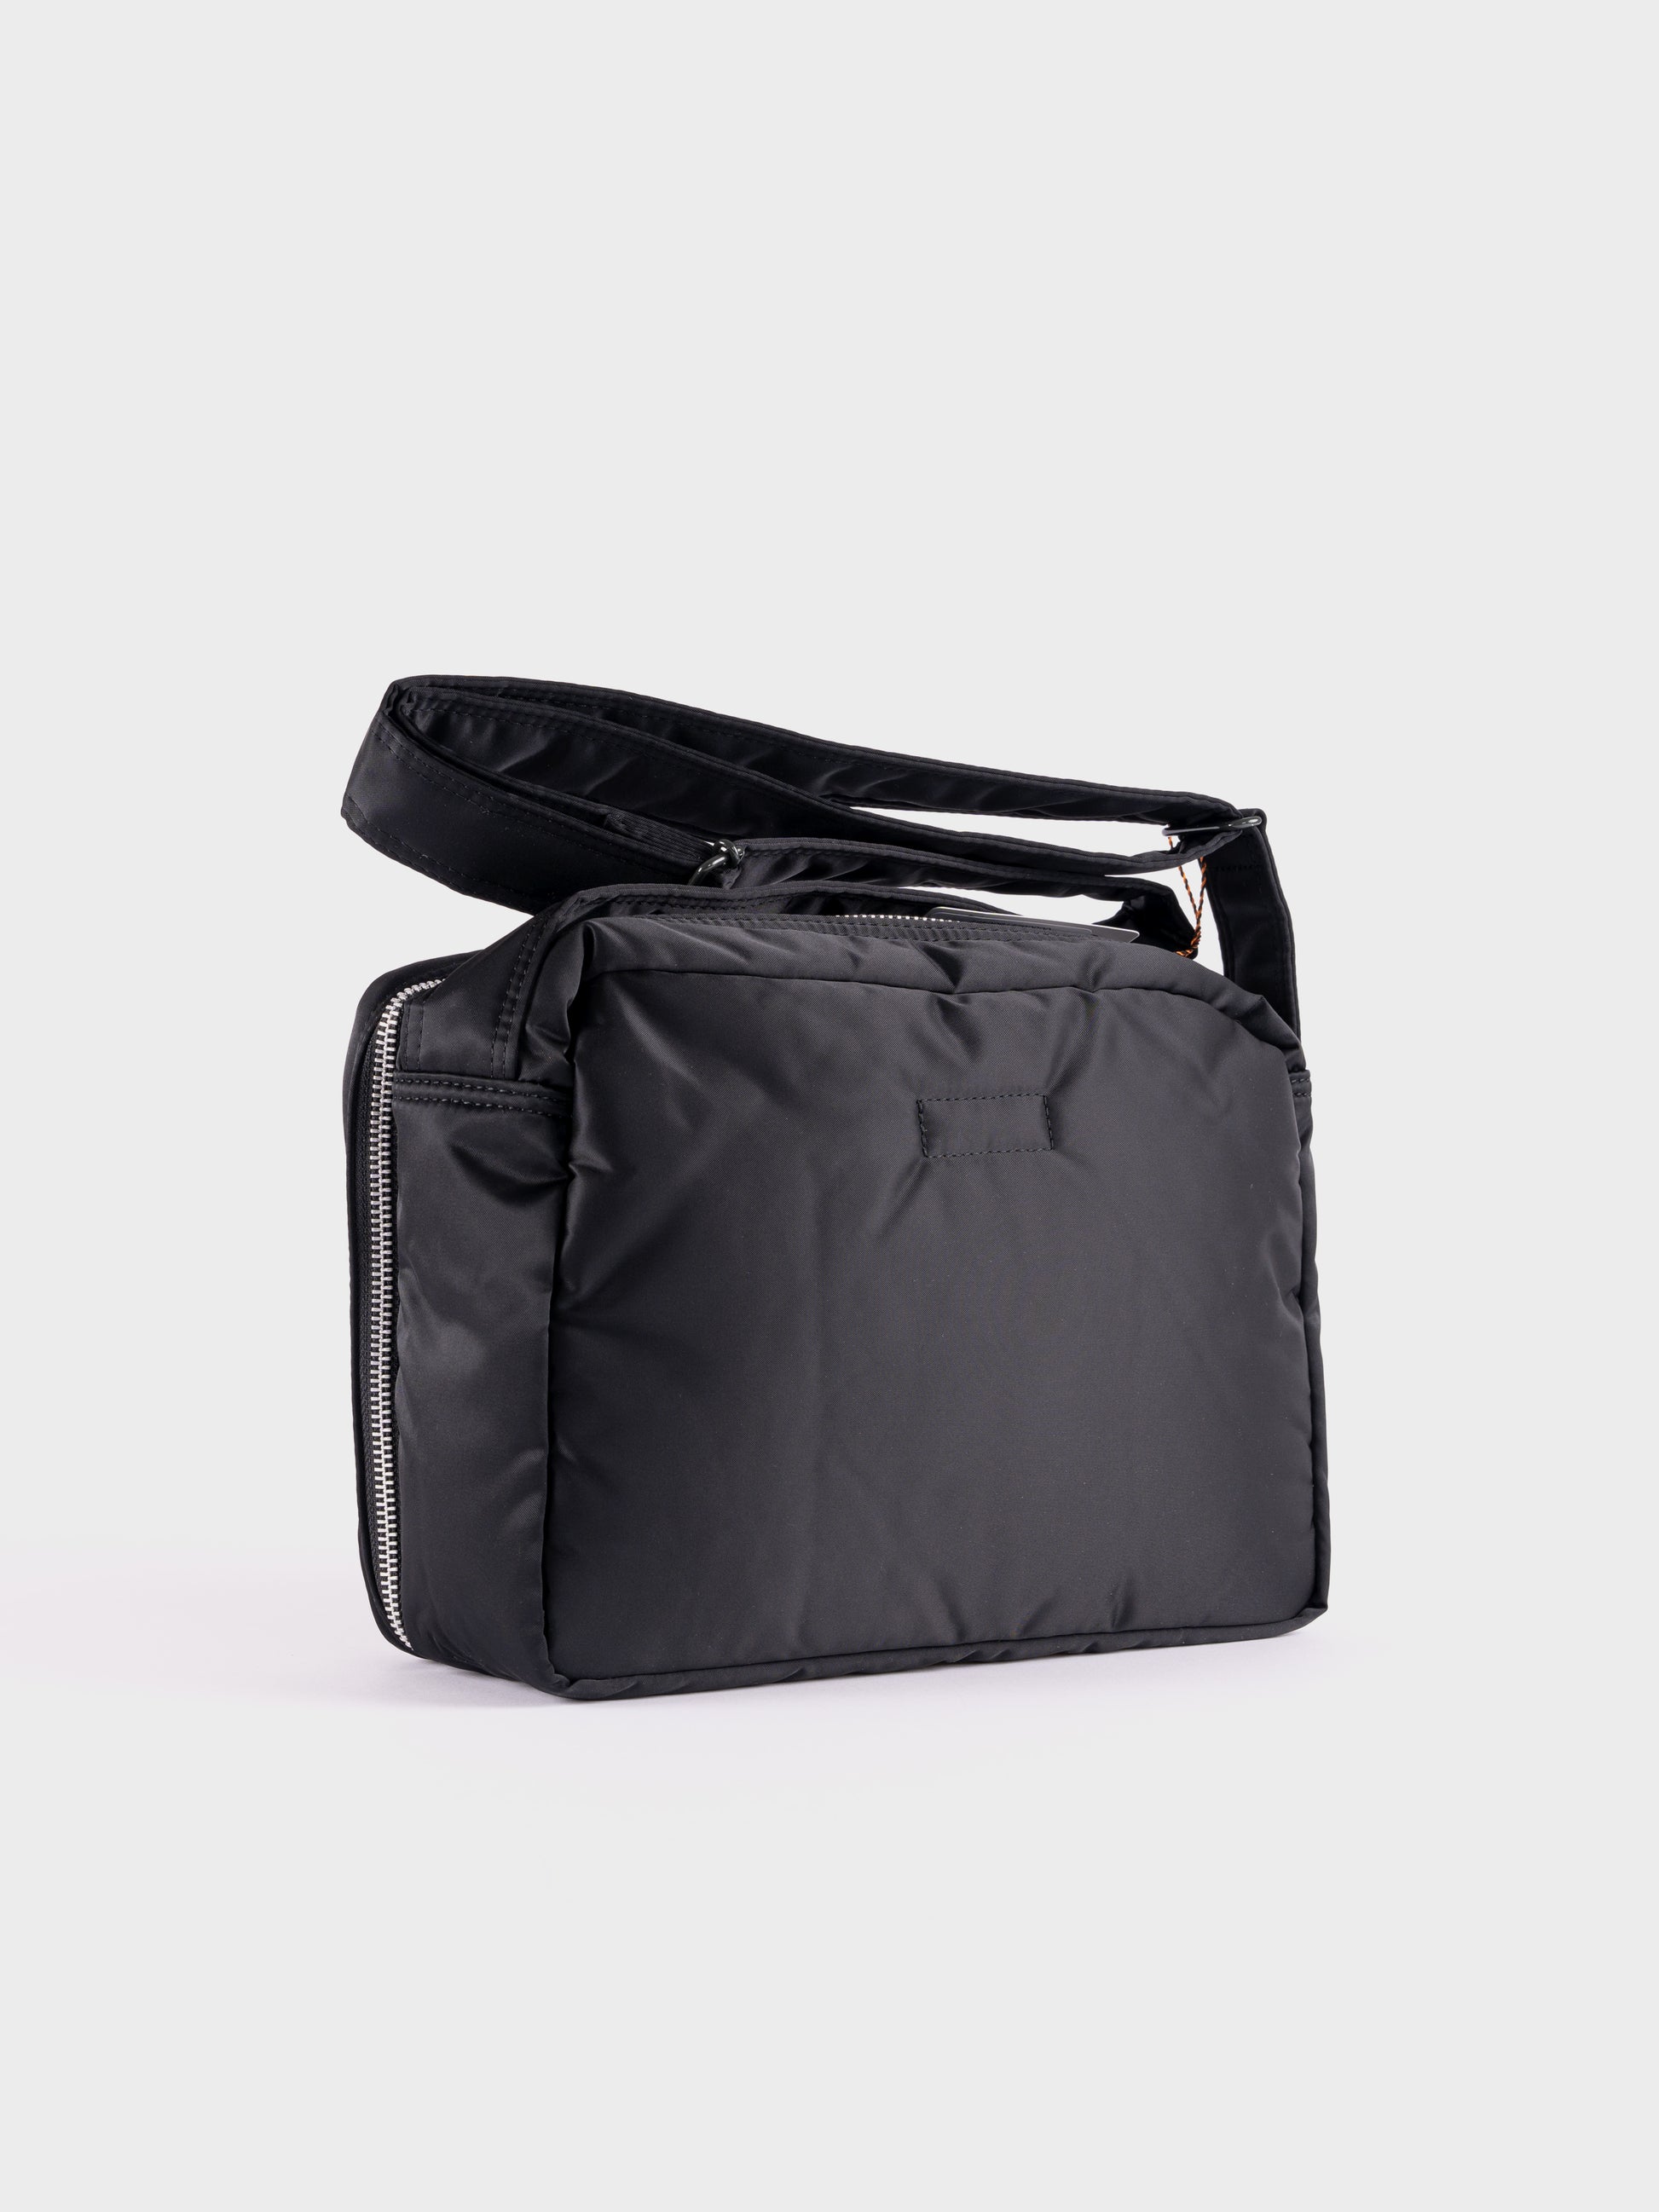 Porter-Yoshida & Co Tanker Shoulder Bag L - Black